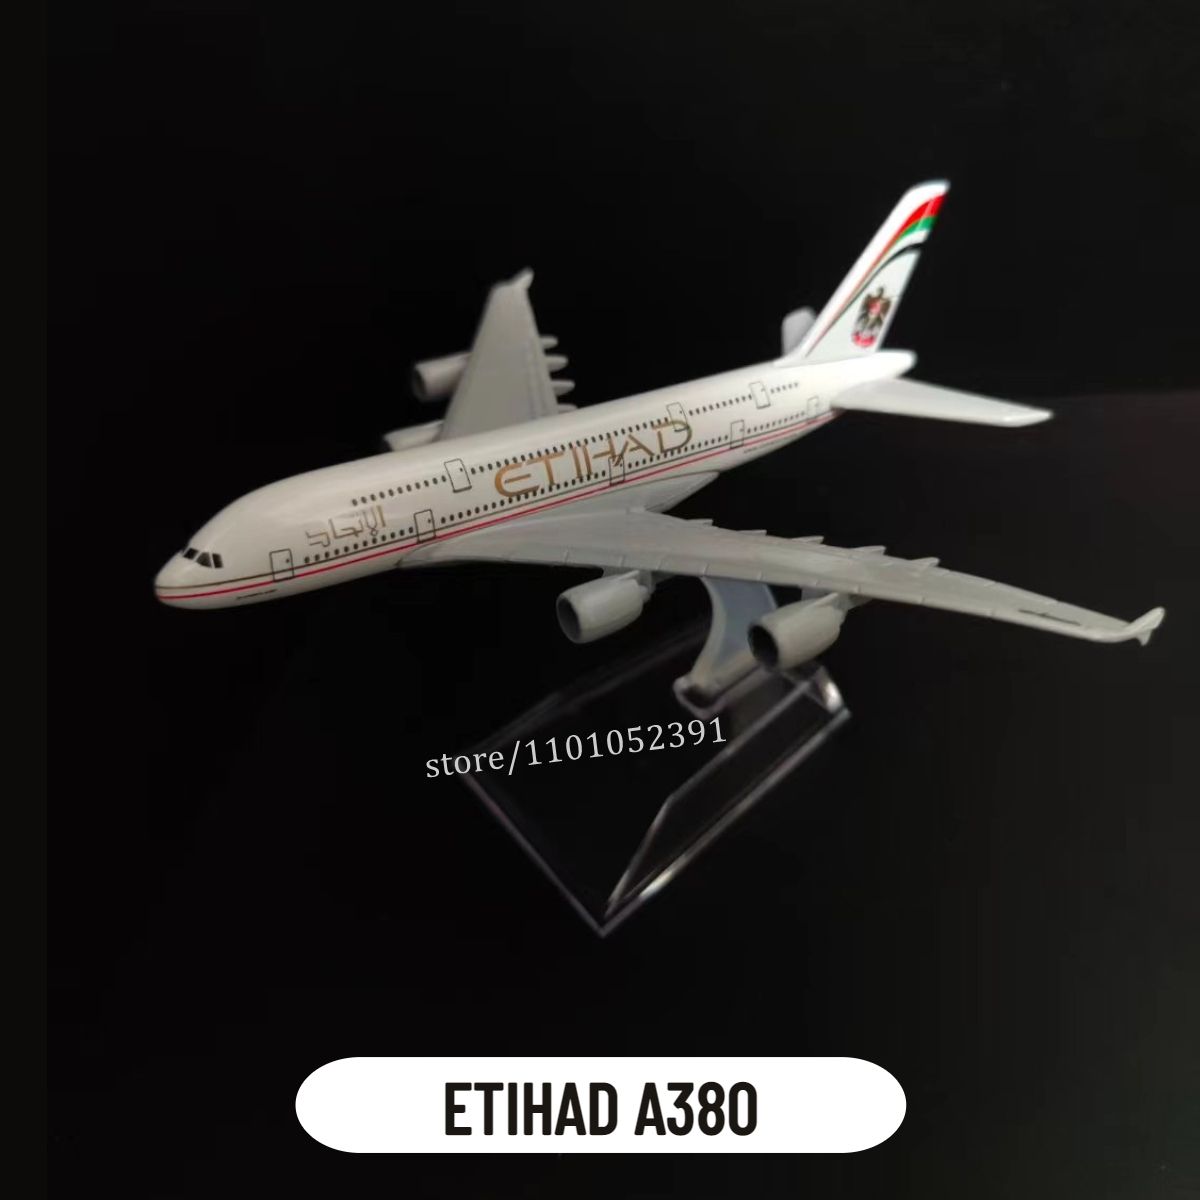 5. ЭТИХАД A380